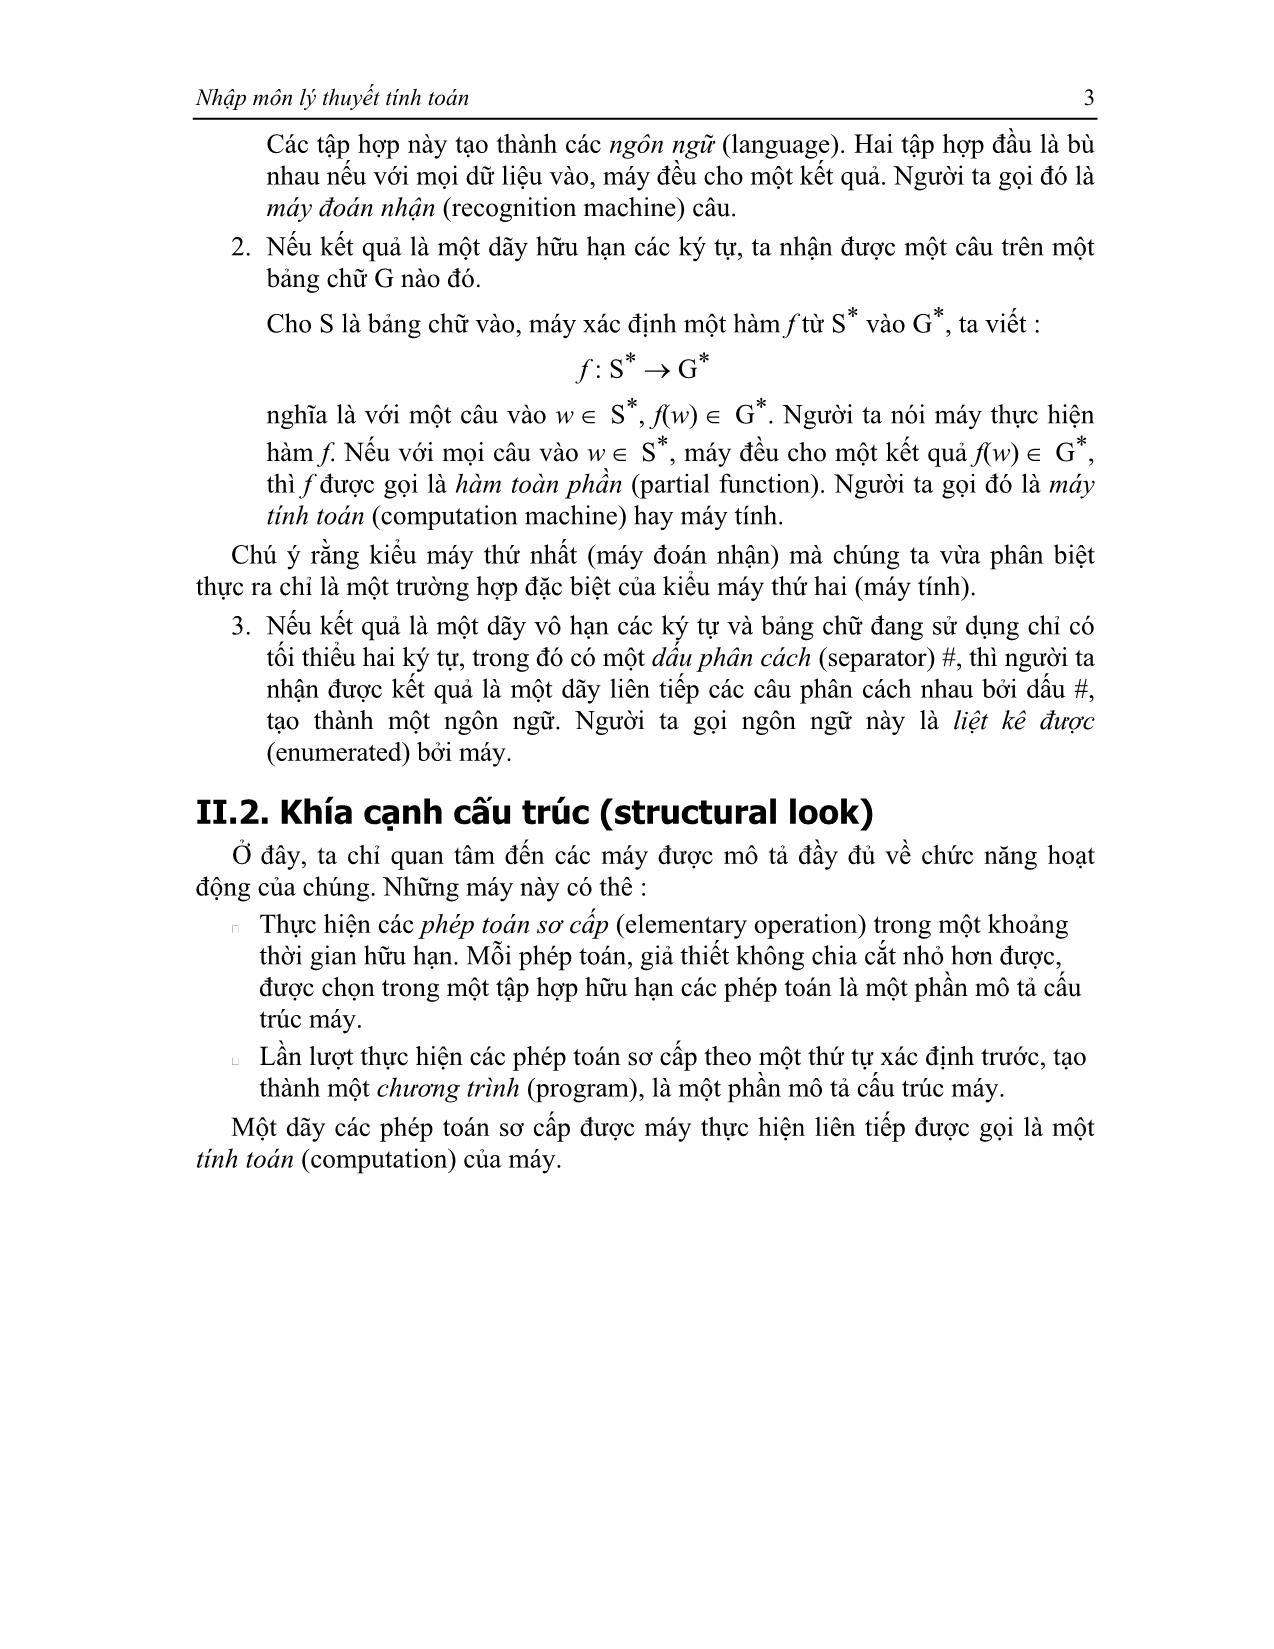 Giáo trình Lý thuyết tính toán trang 9